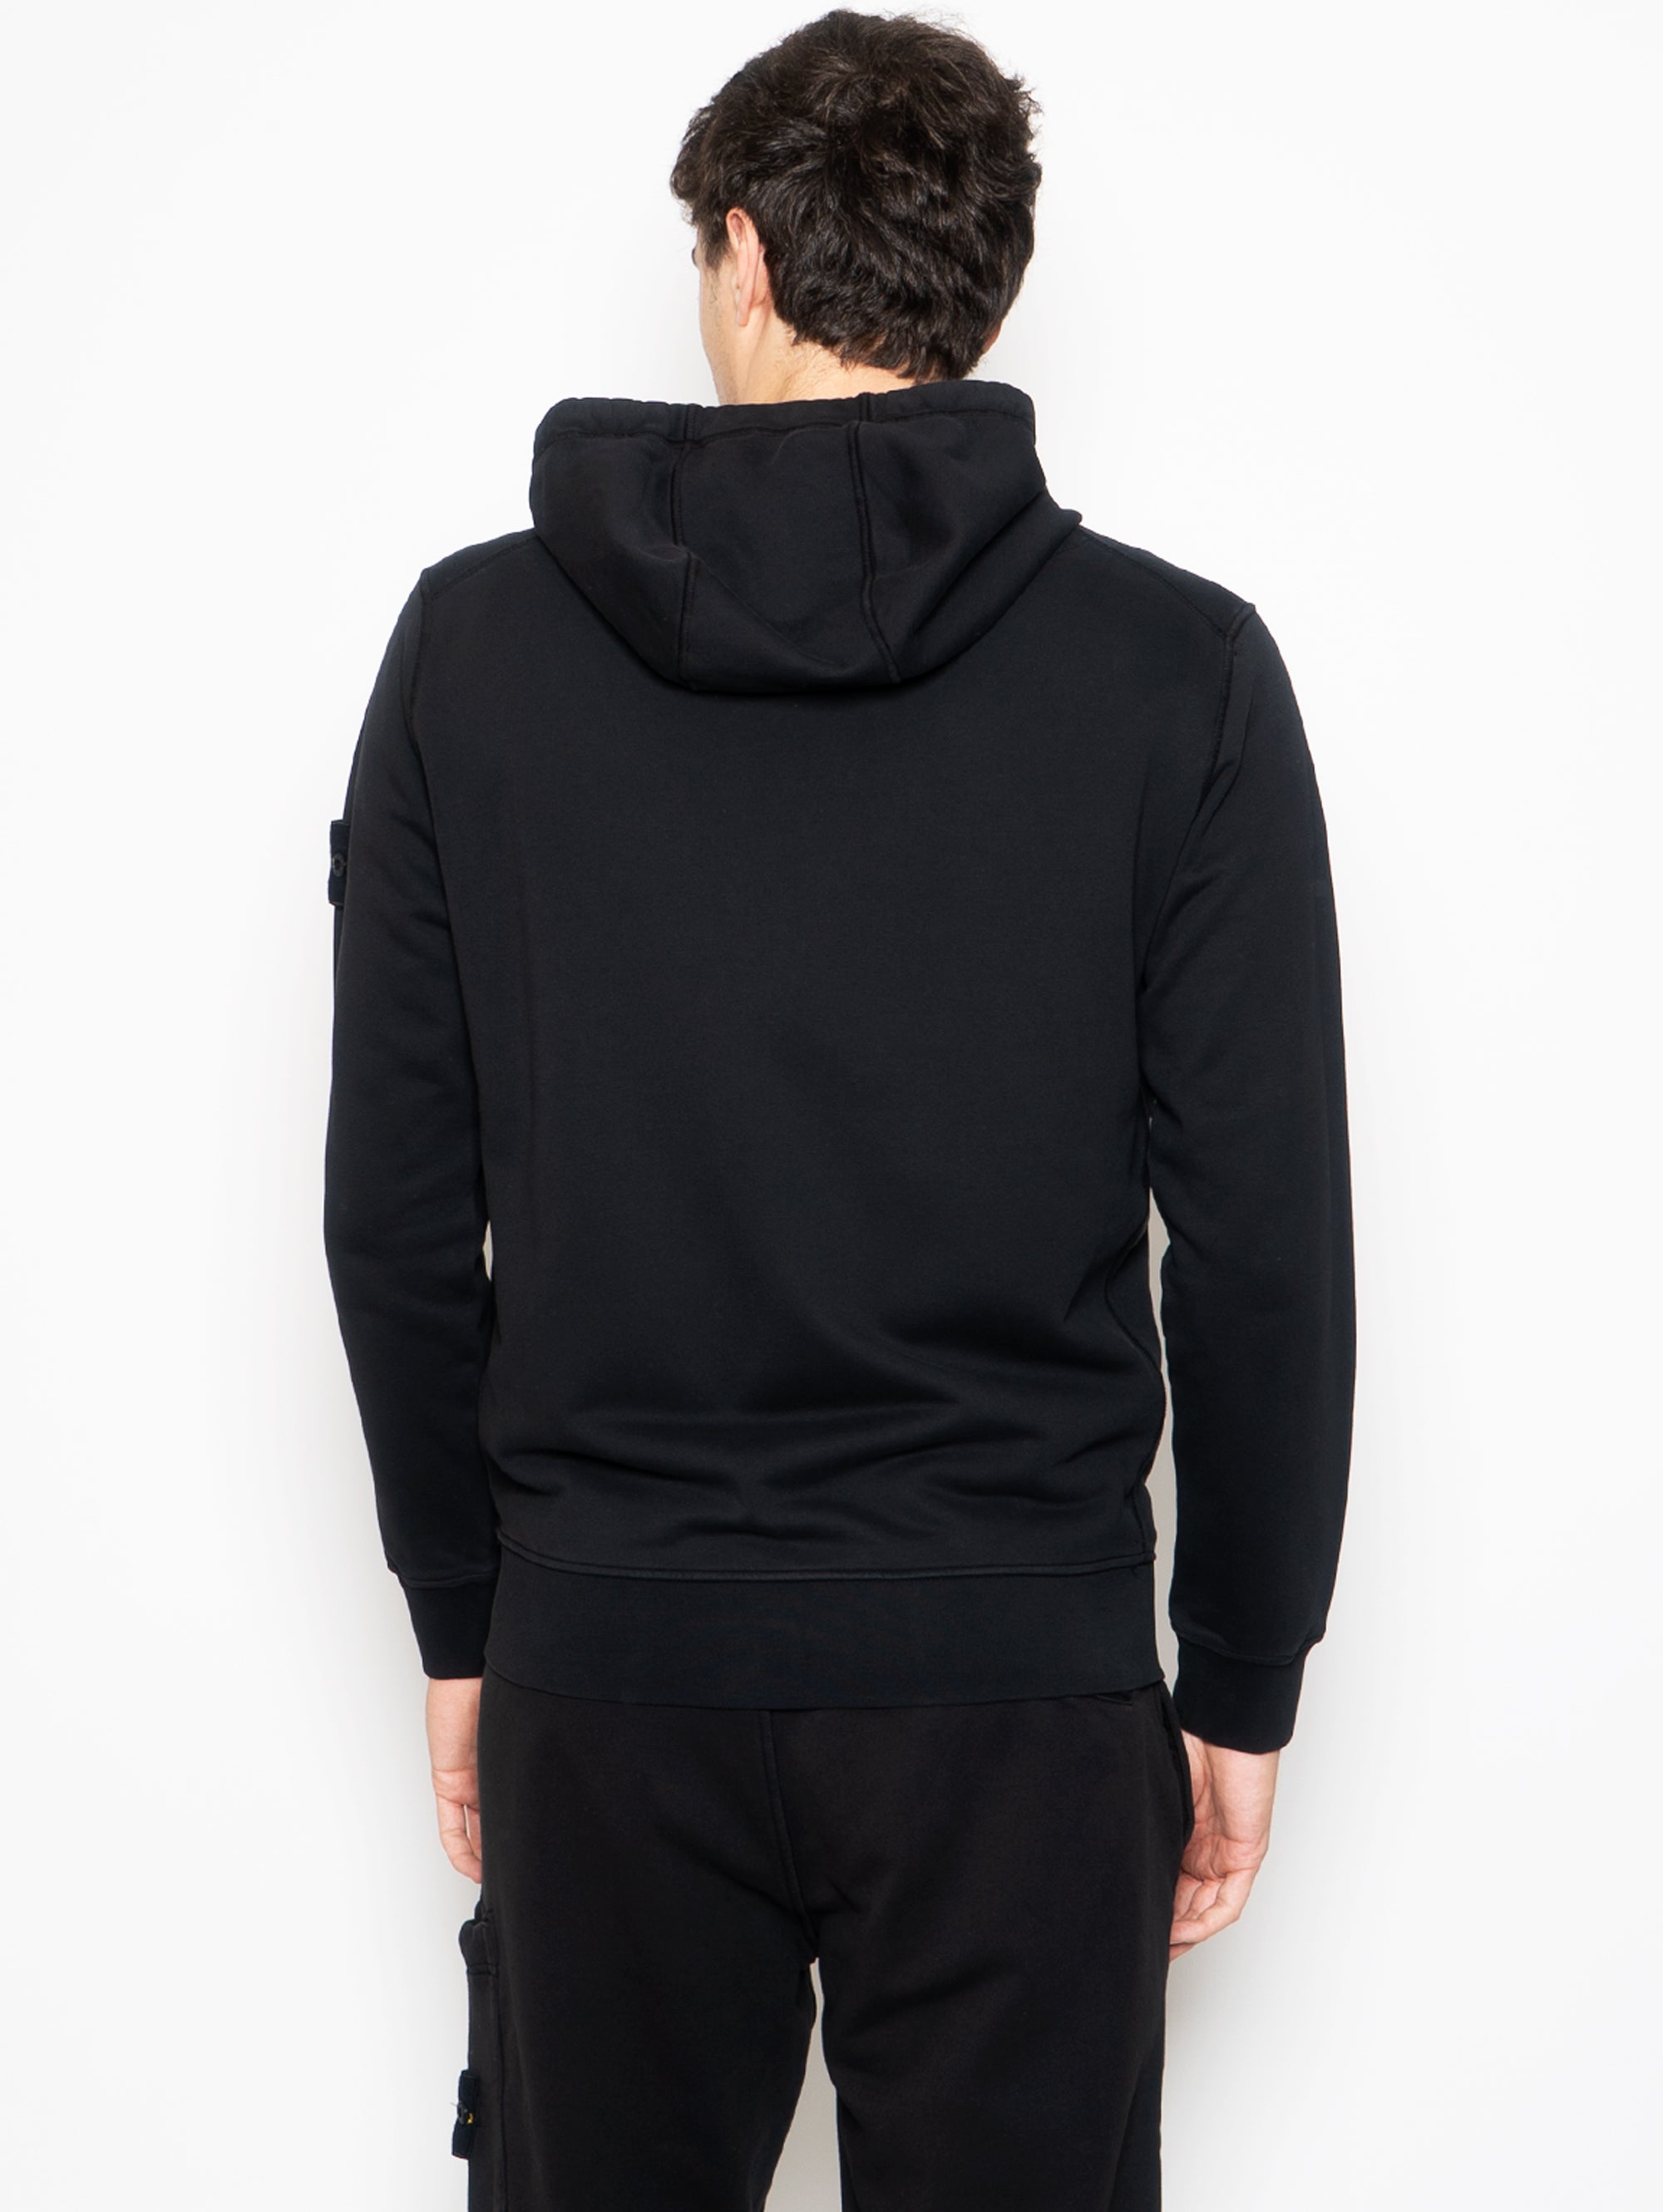 Sweatshirt mit durchgehendem Reißverschluss und schwarzer Kapuze